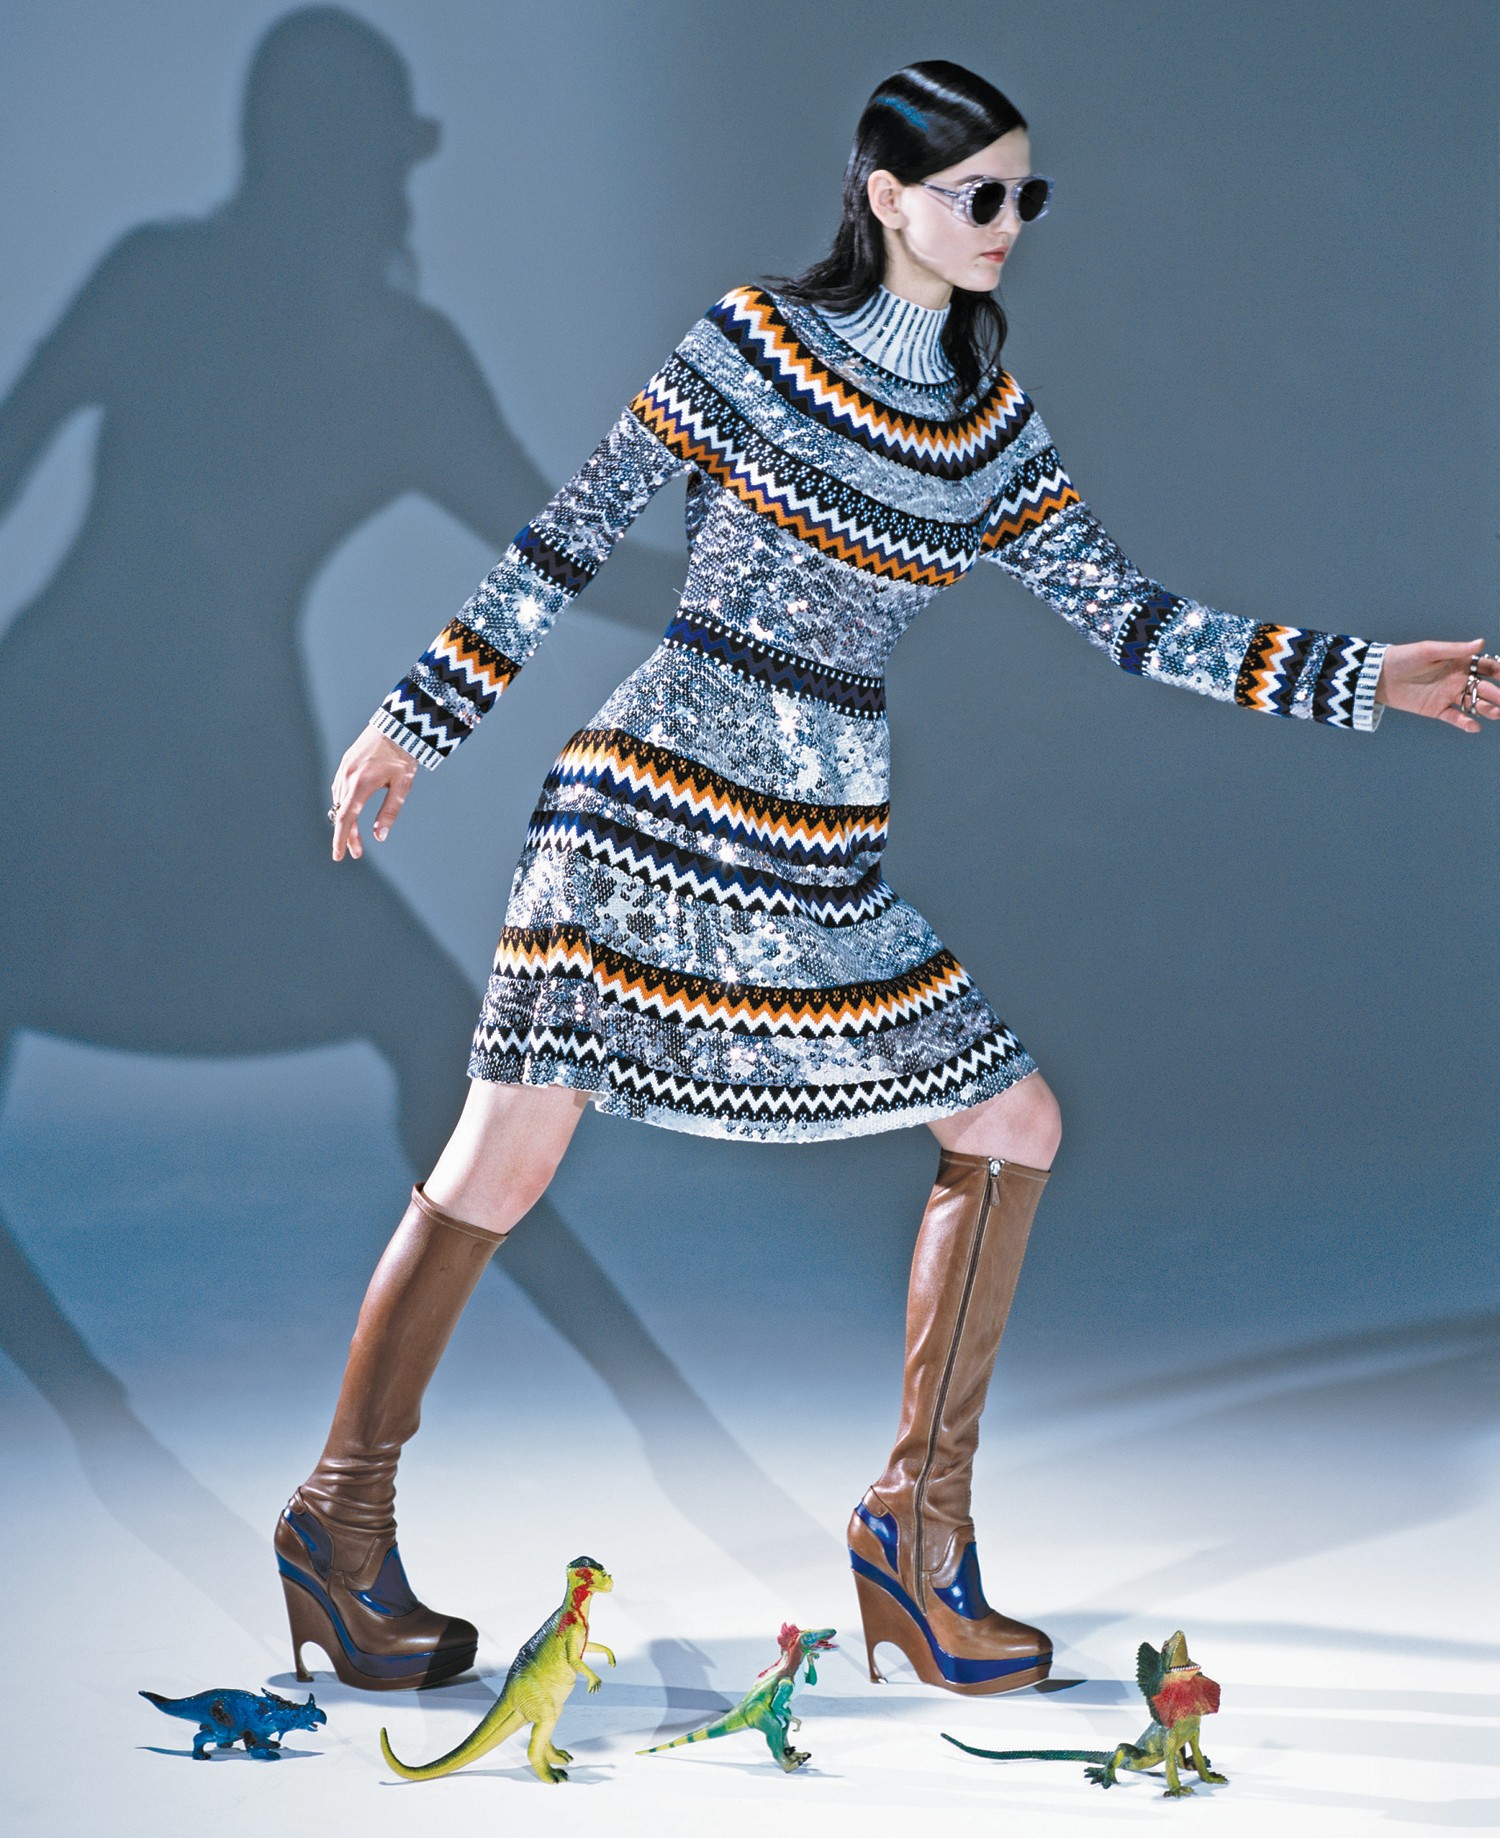 Uma das fotos do ensaio clicado por Araki da coleção Esprit Dior, que chega às lojas em junho (Foto: © Nobuyoshi Araki Courtesy The Artist And Kamel Mennour, Paris e Divulgação)